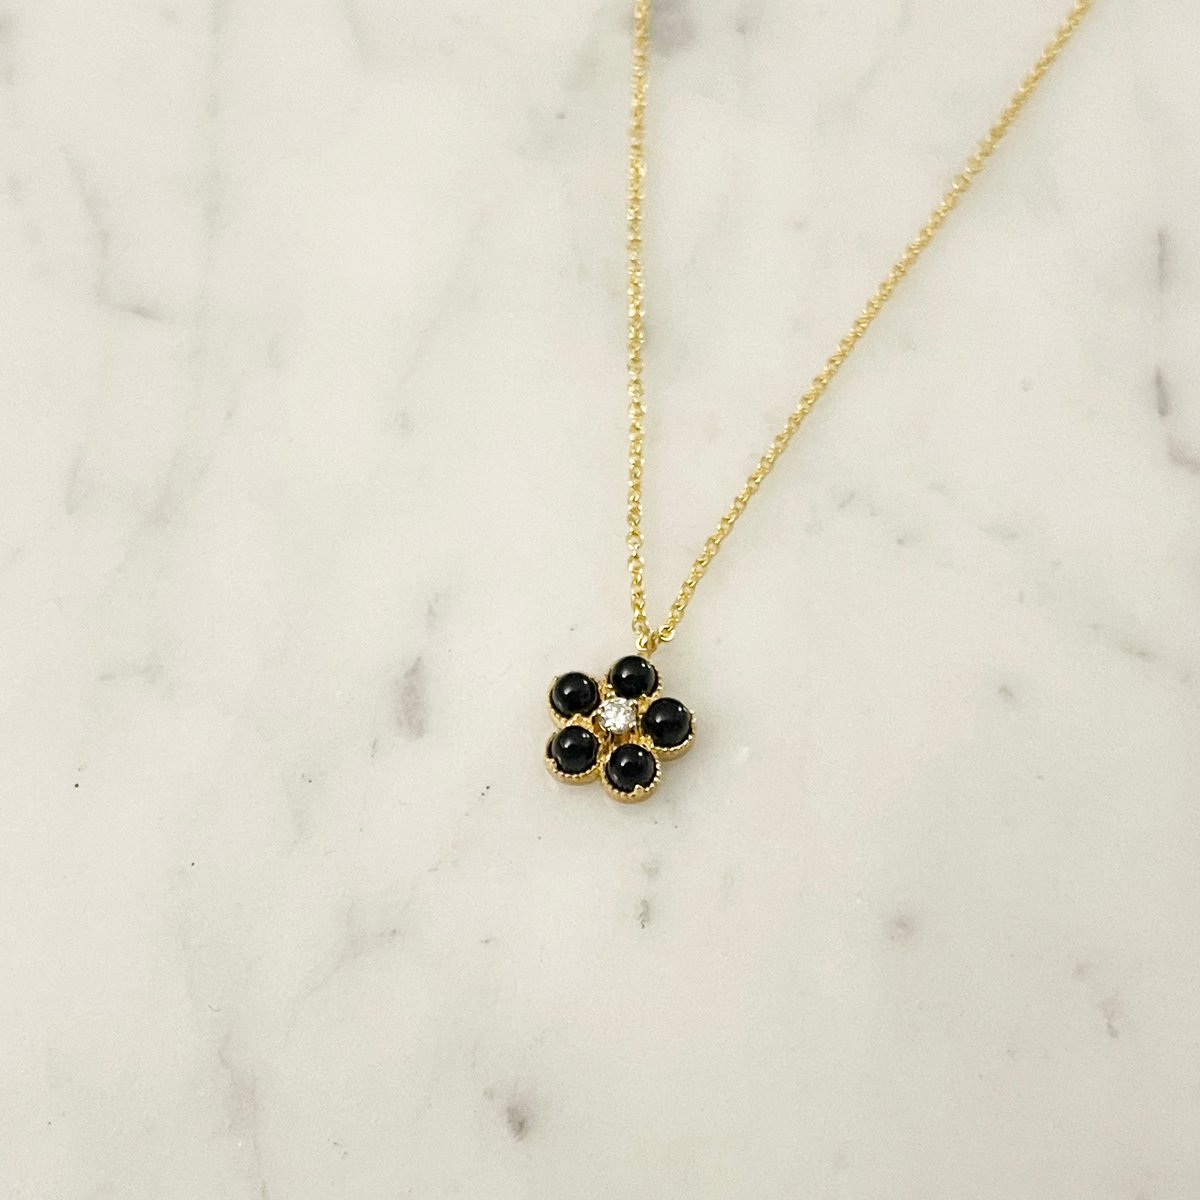 Image of Black onyx daisy necklace